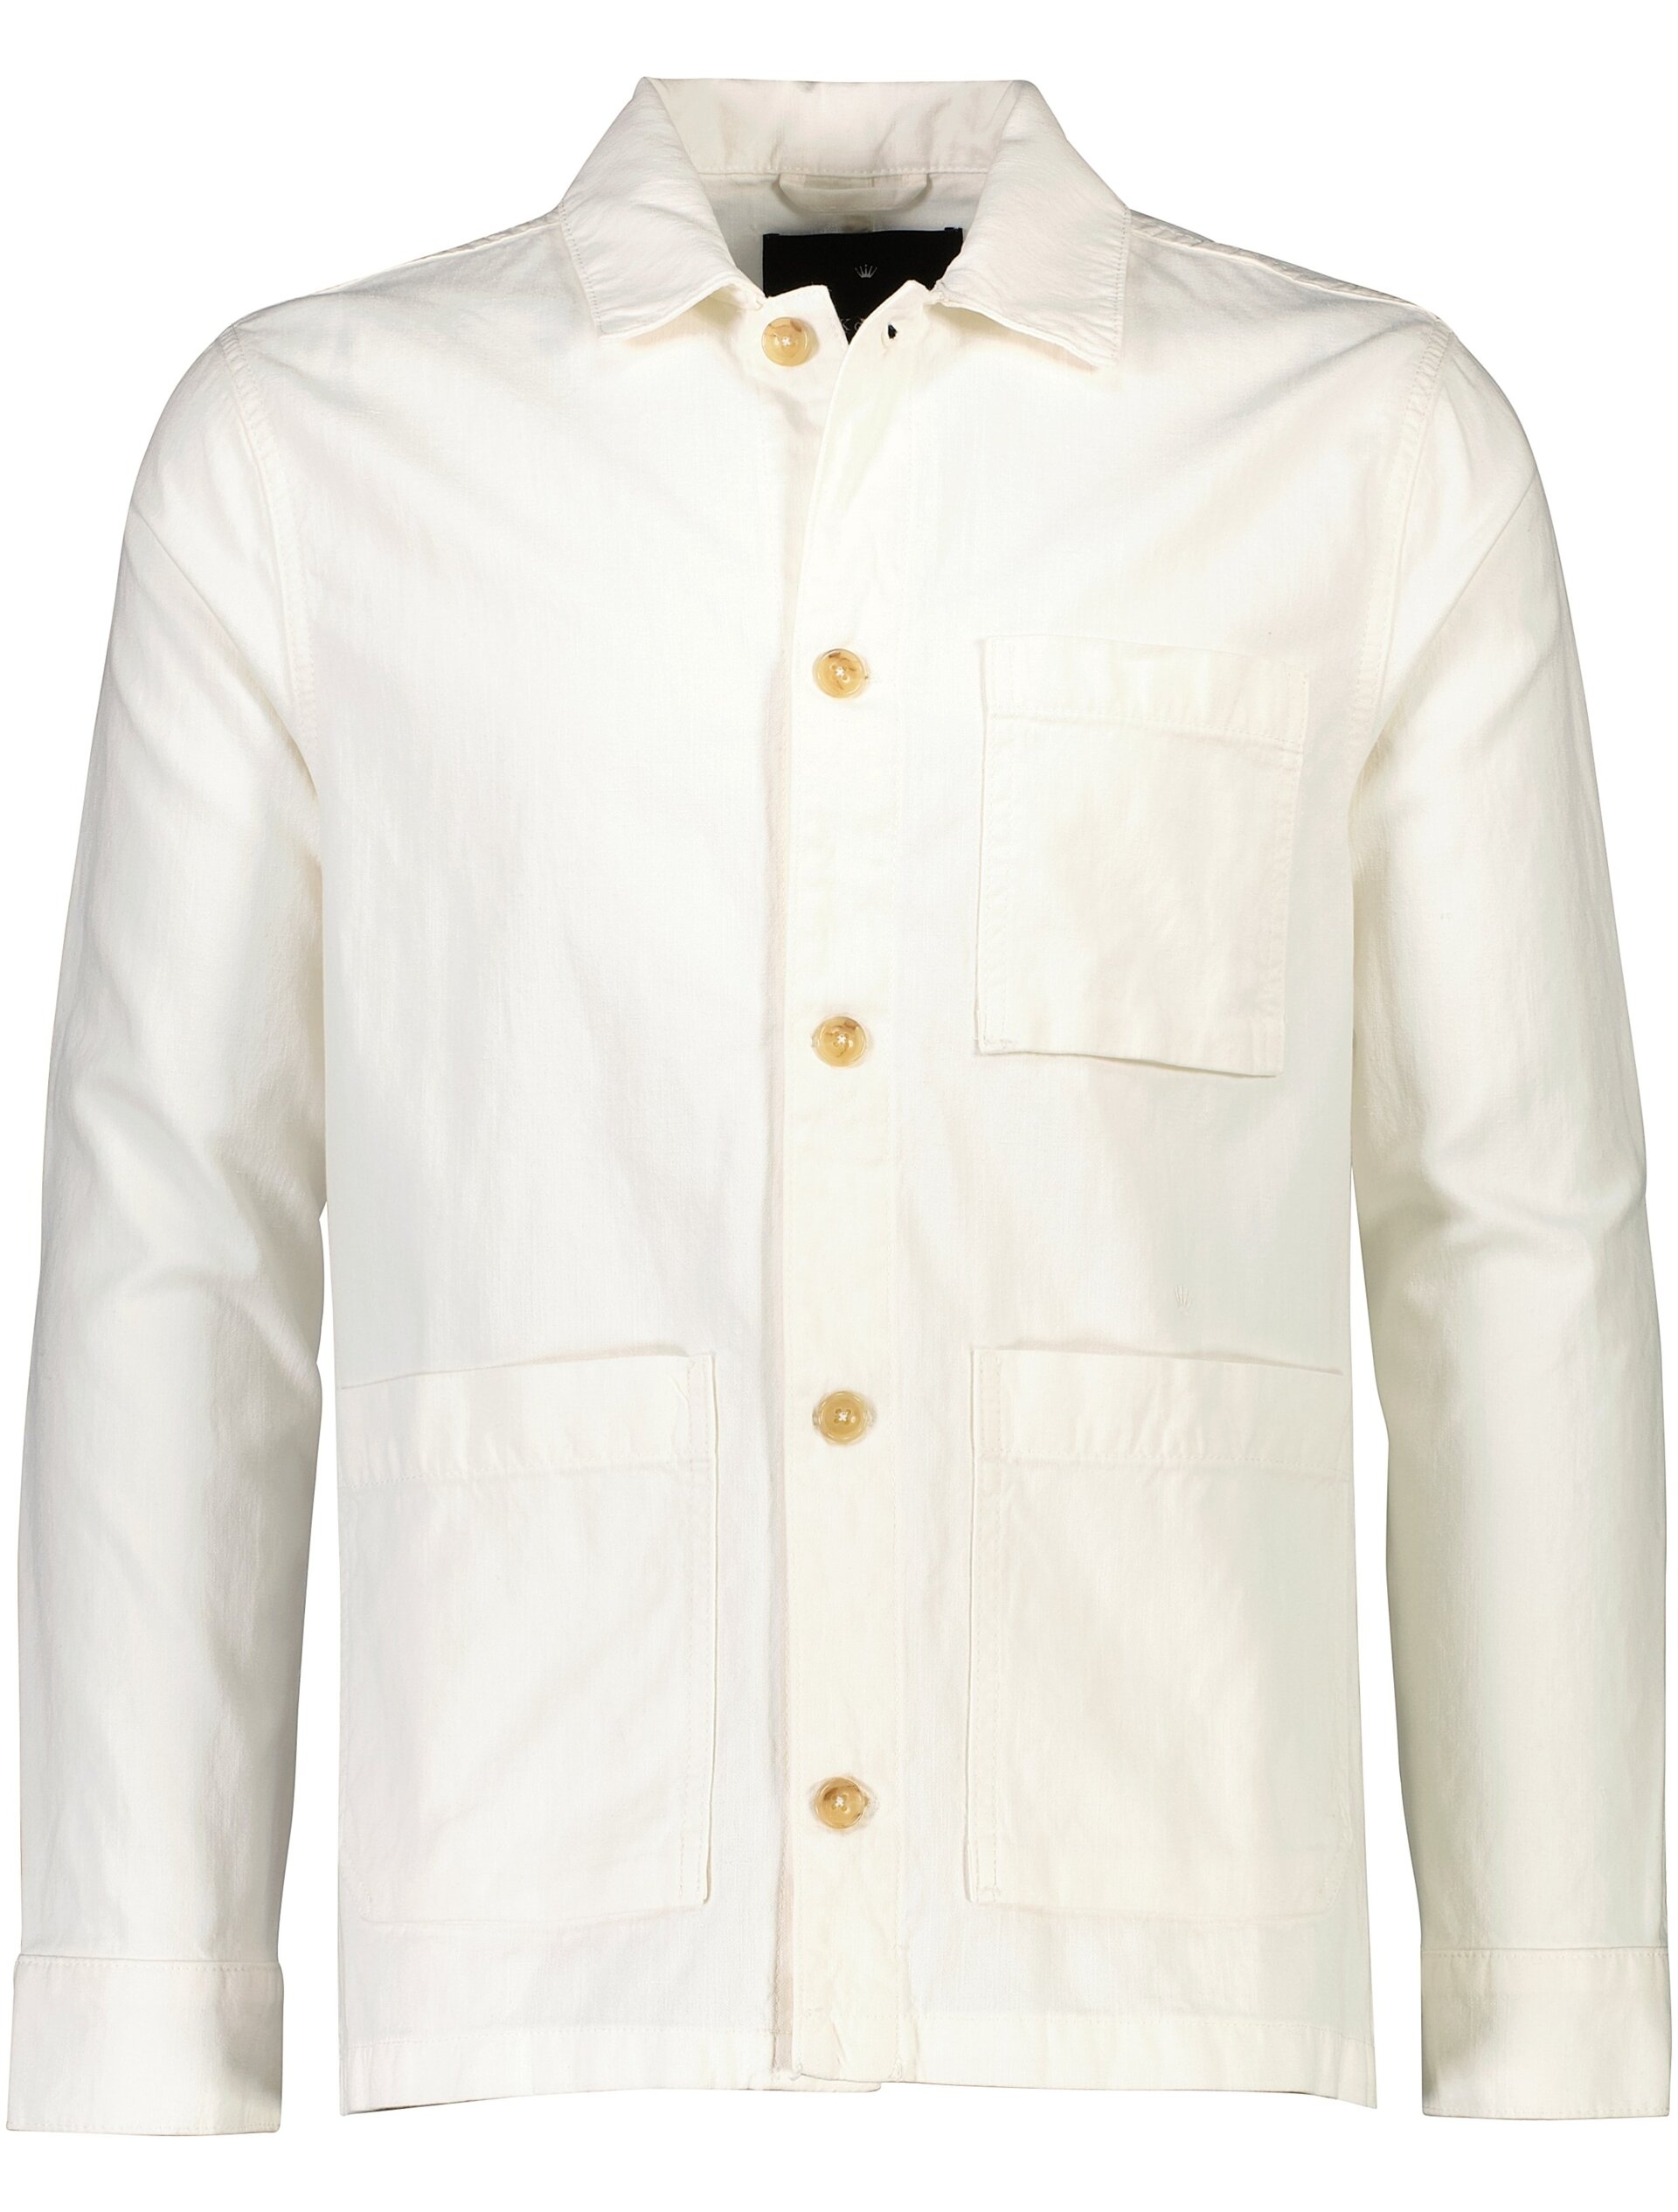 Junk de Luxe Overshirt hvid / off white